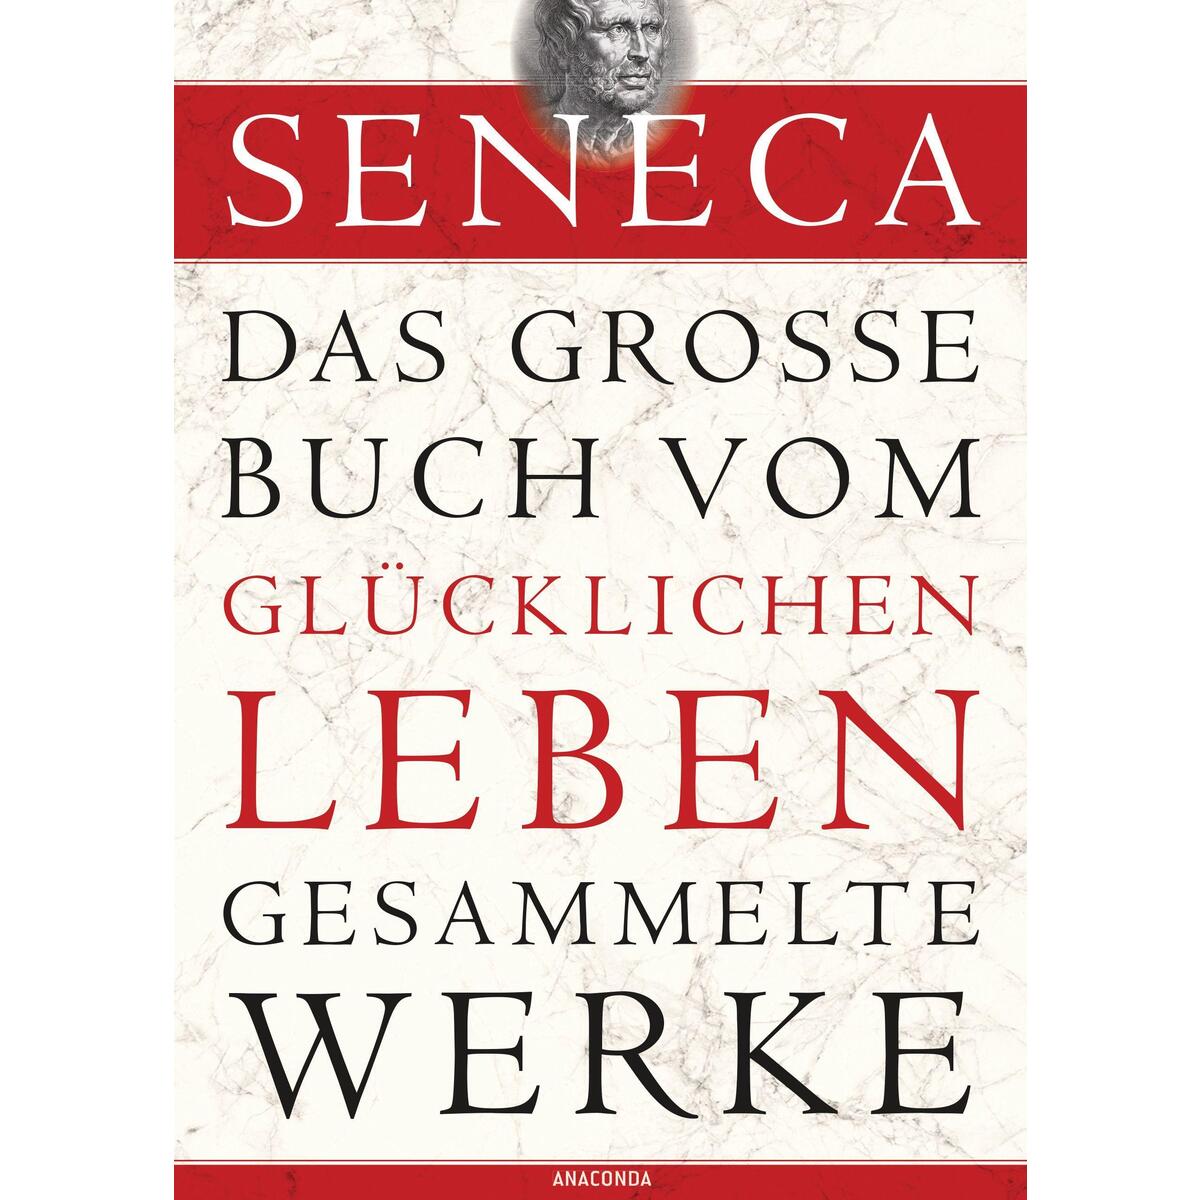 Seneca - Das große Buch vom glücklichen Leben - Gesammelte Werke von Anaconda Verlag